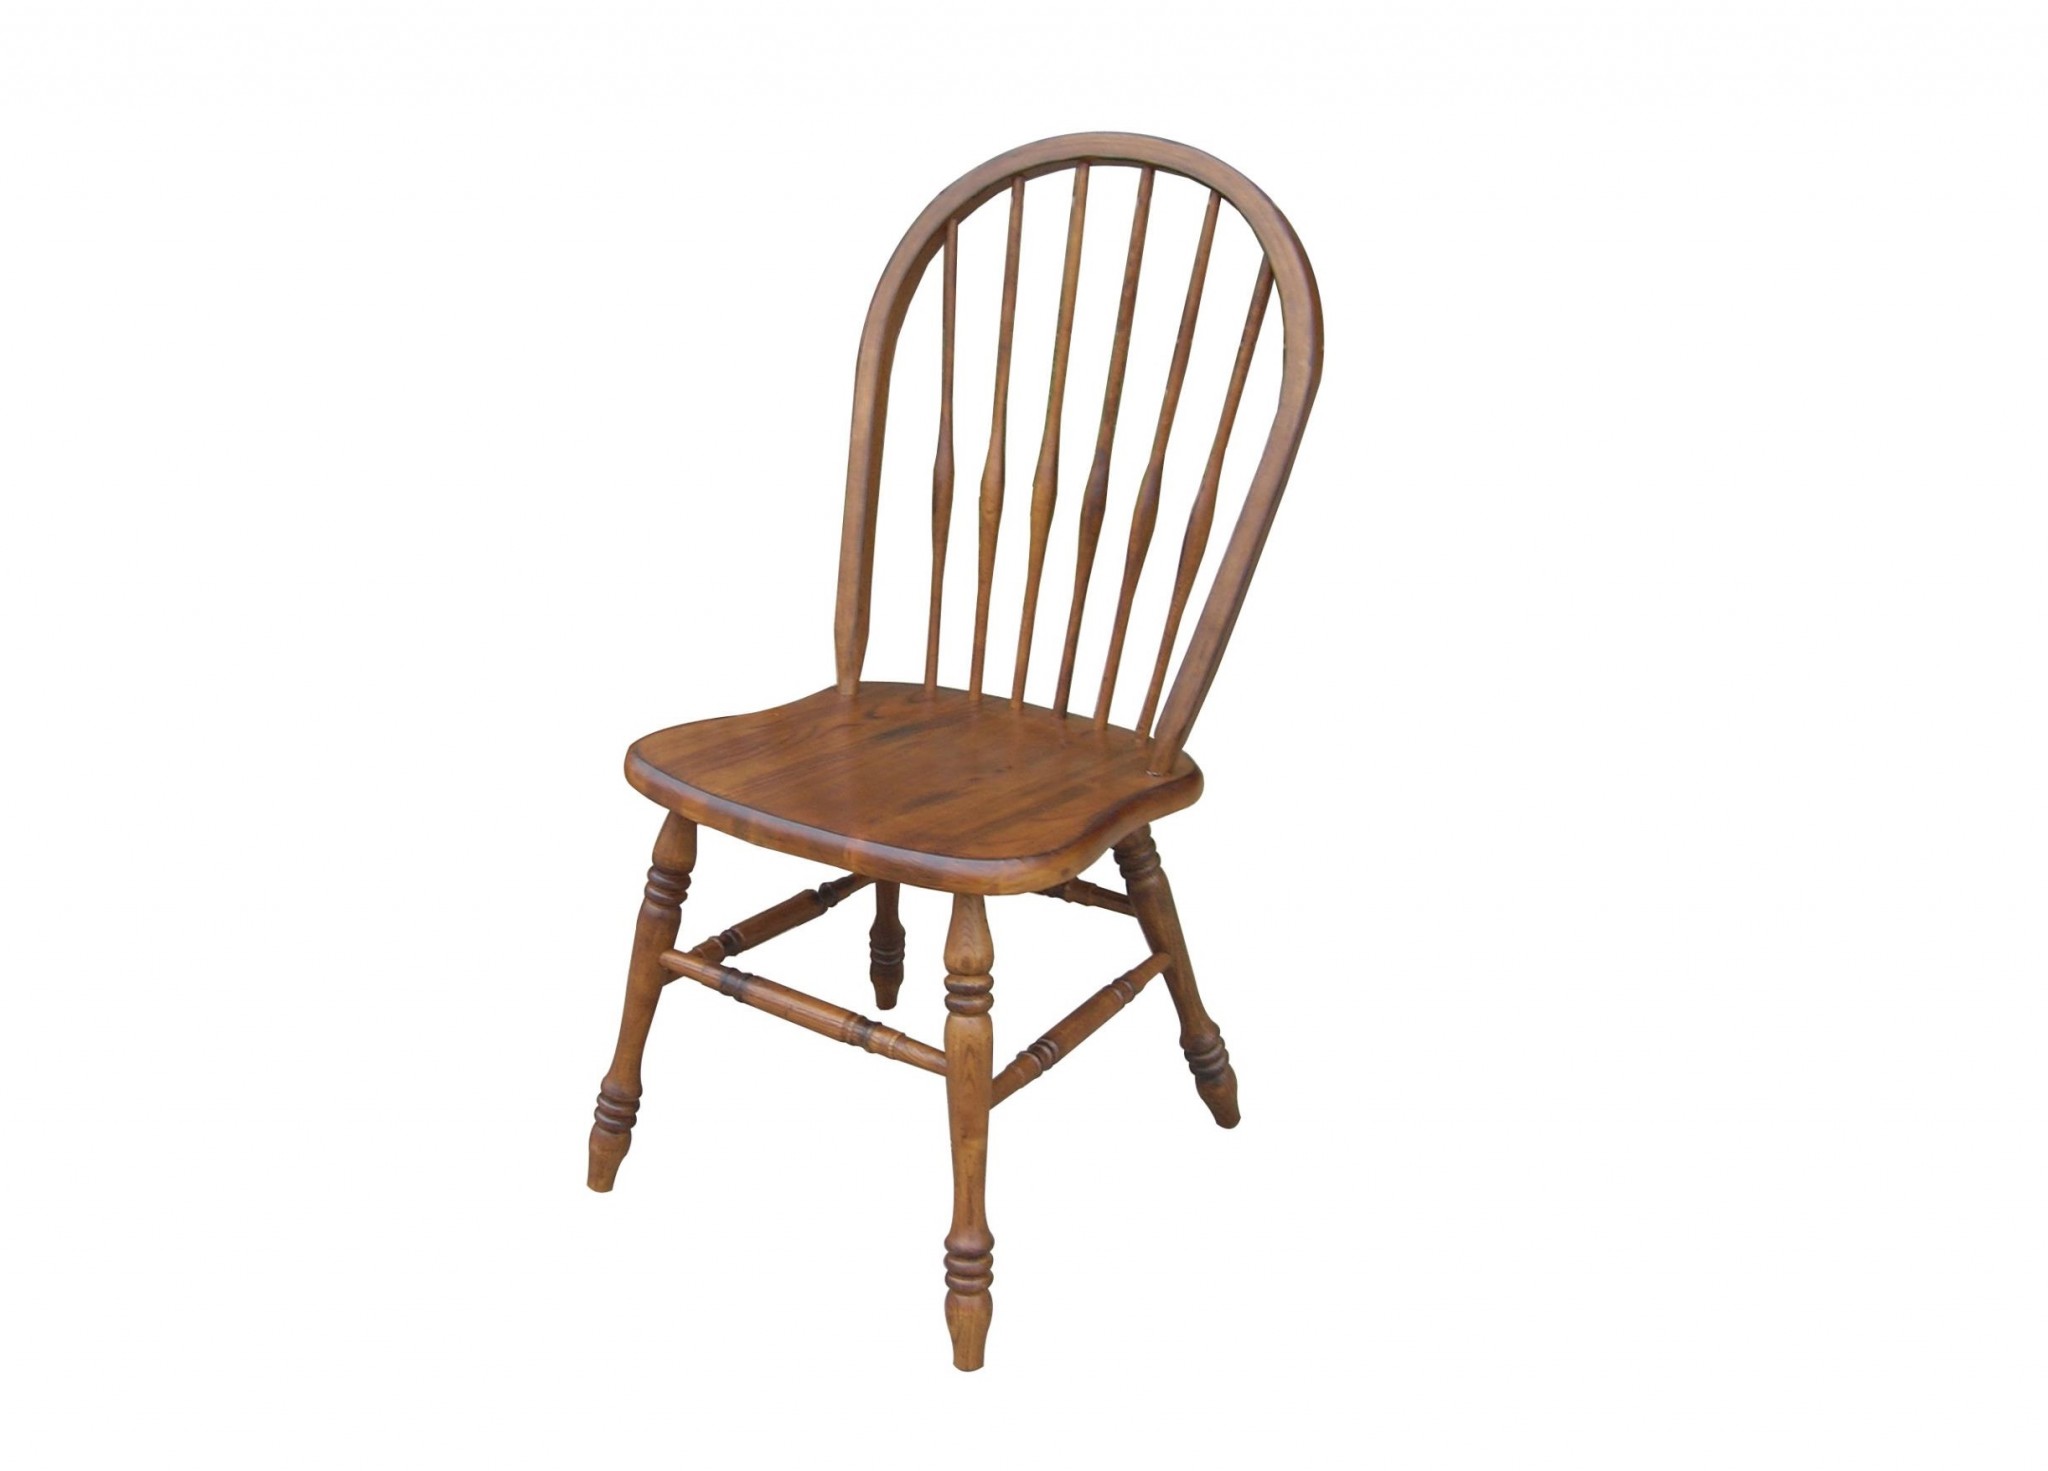 19.25" X 21.5" X 37.25" Burnished Walnut Hardwood Side Chair